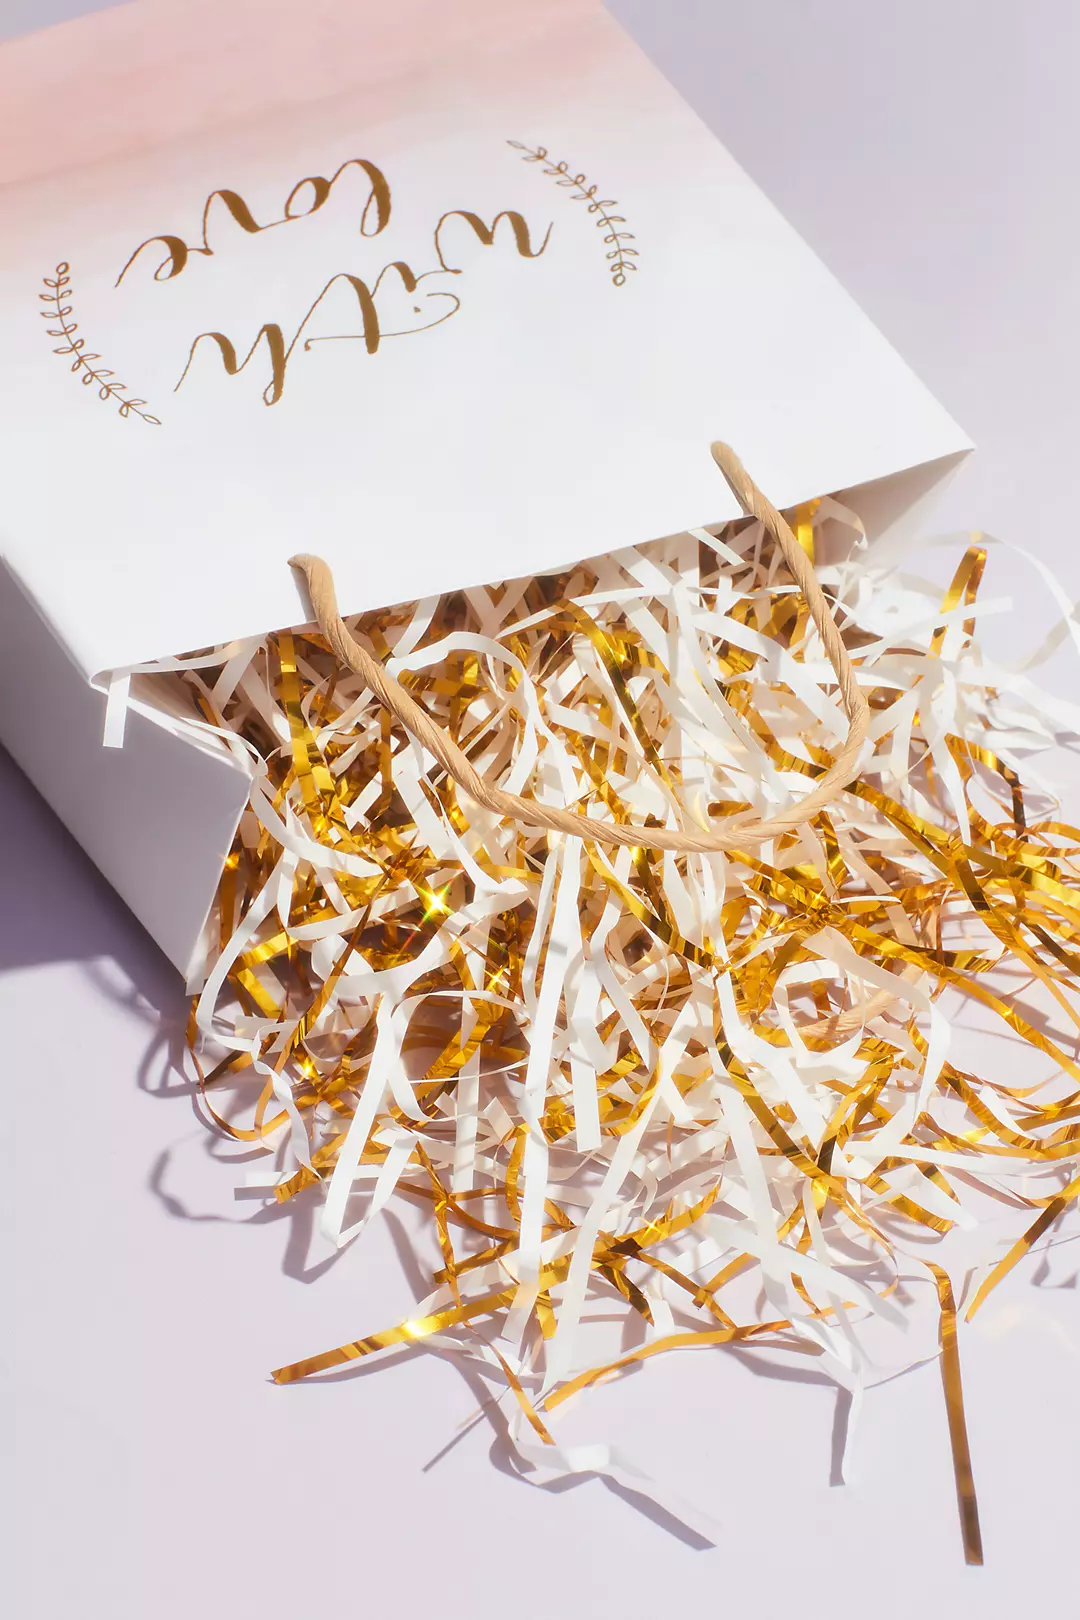 Gold Paper Shred Gift Bag Filler